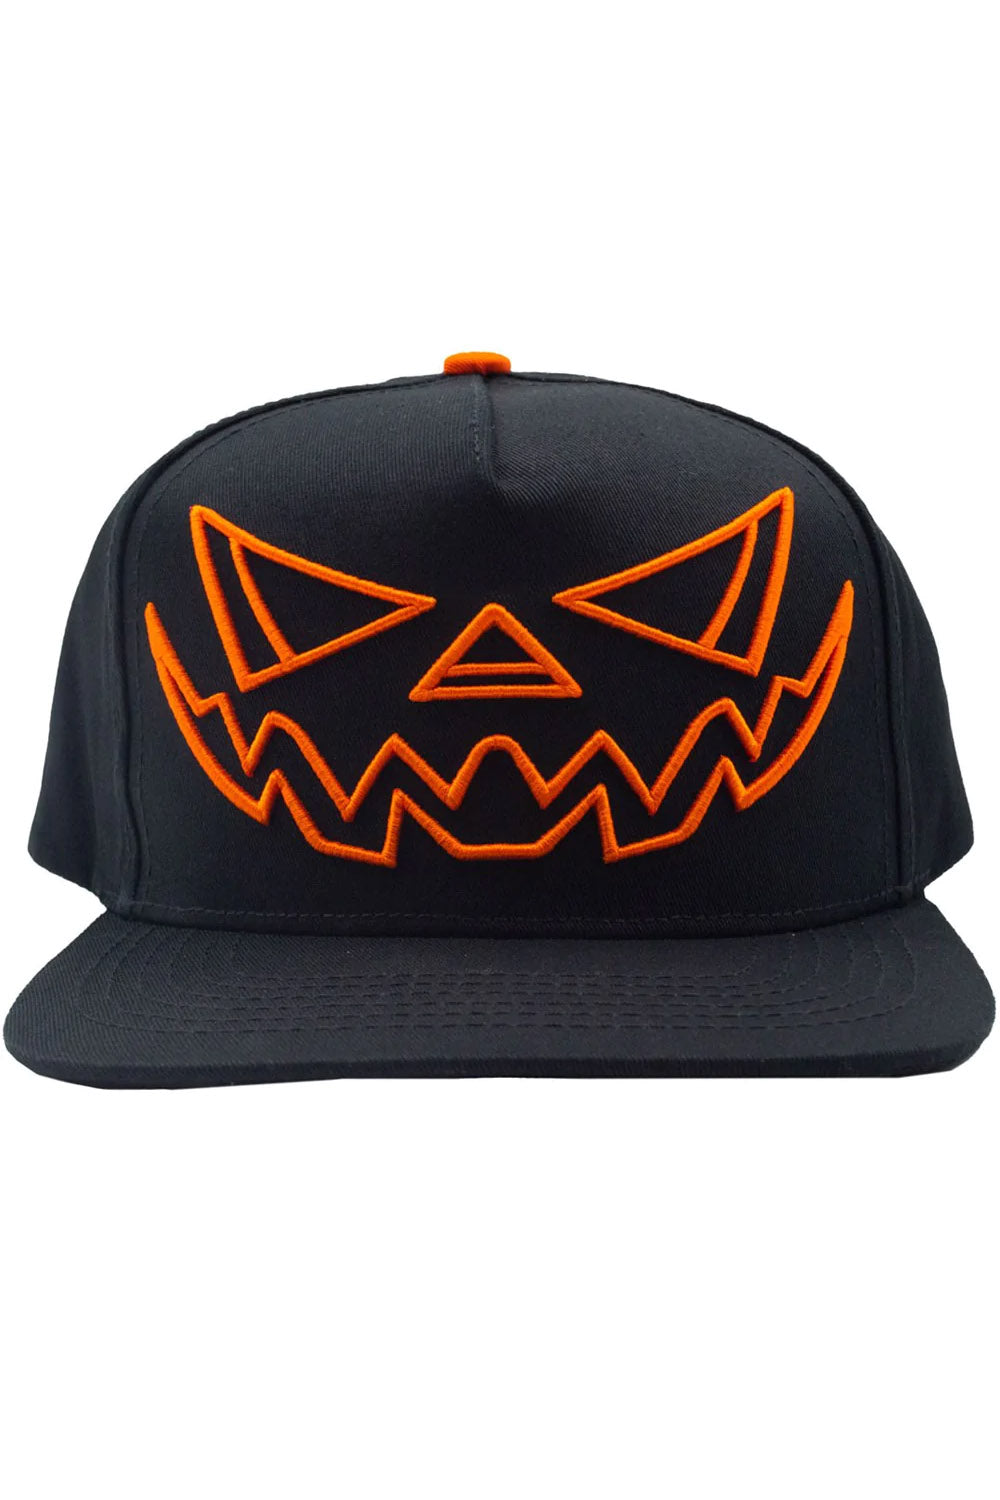 Pumpkin Basesball Hat